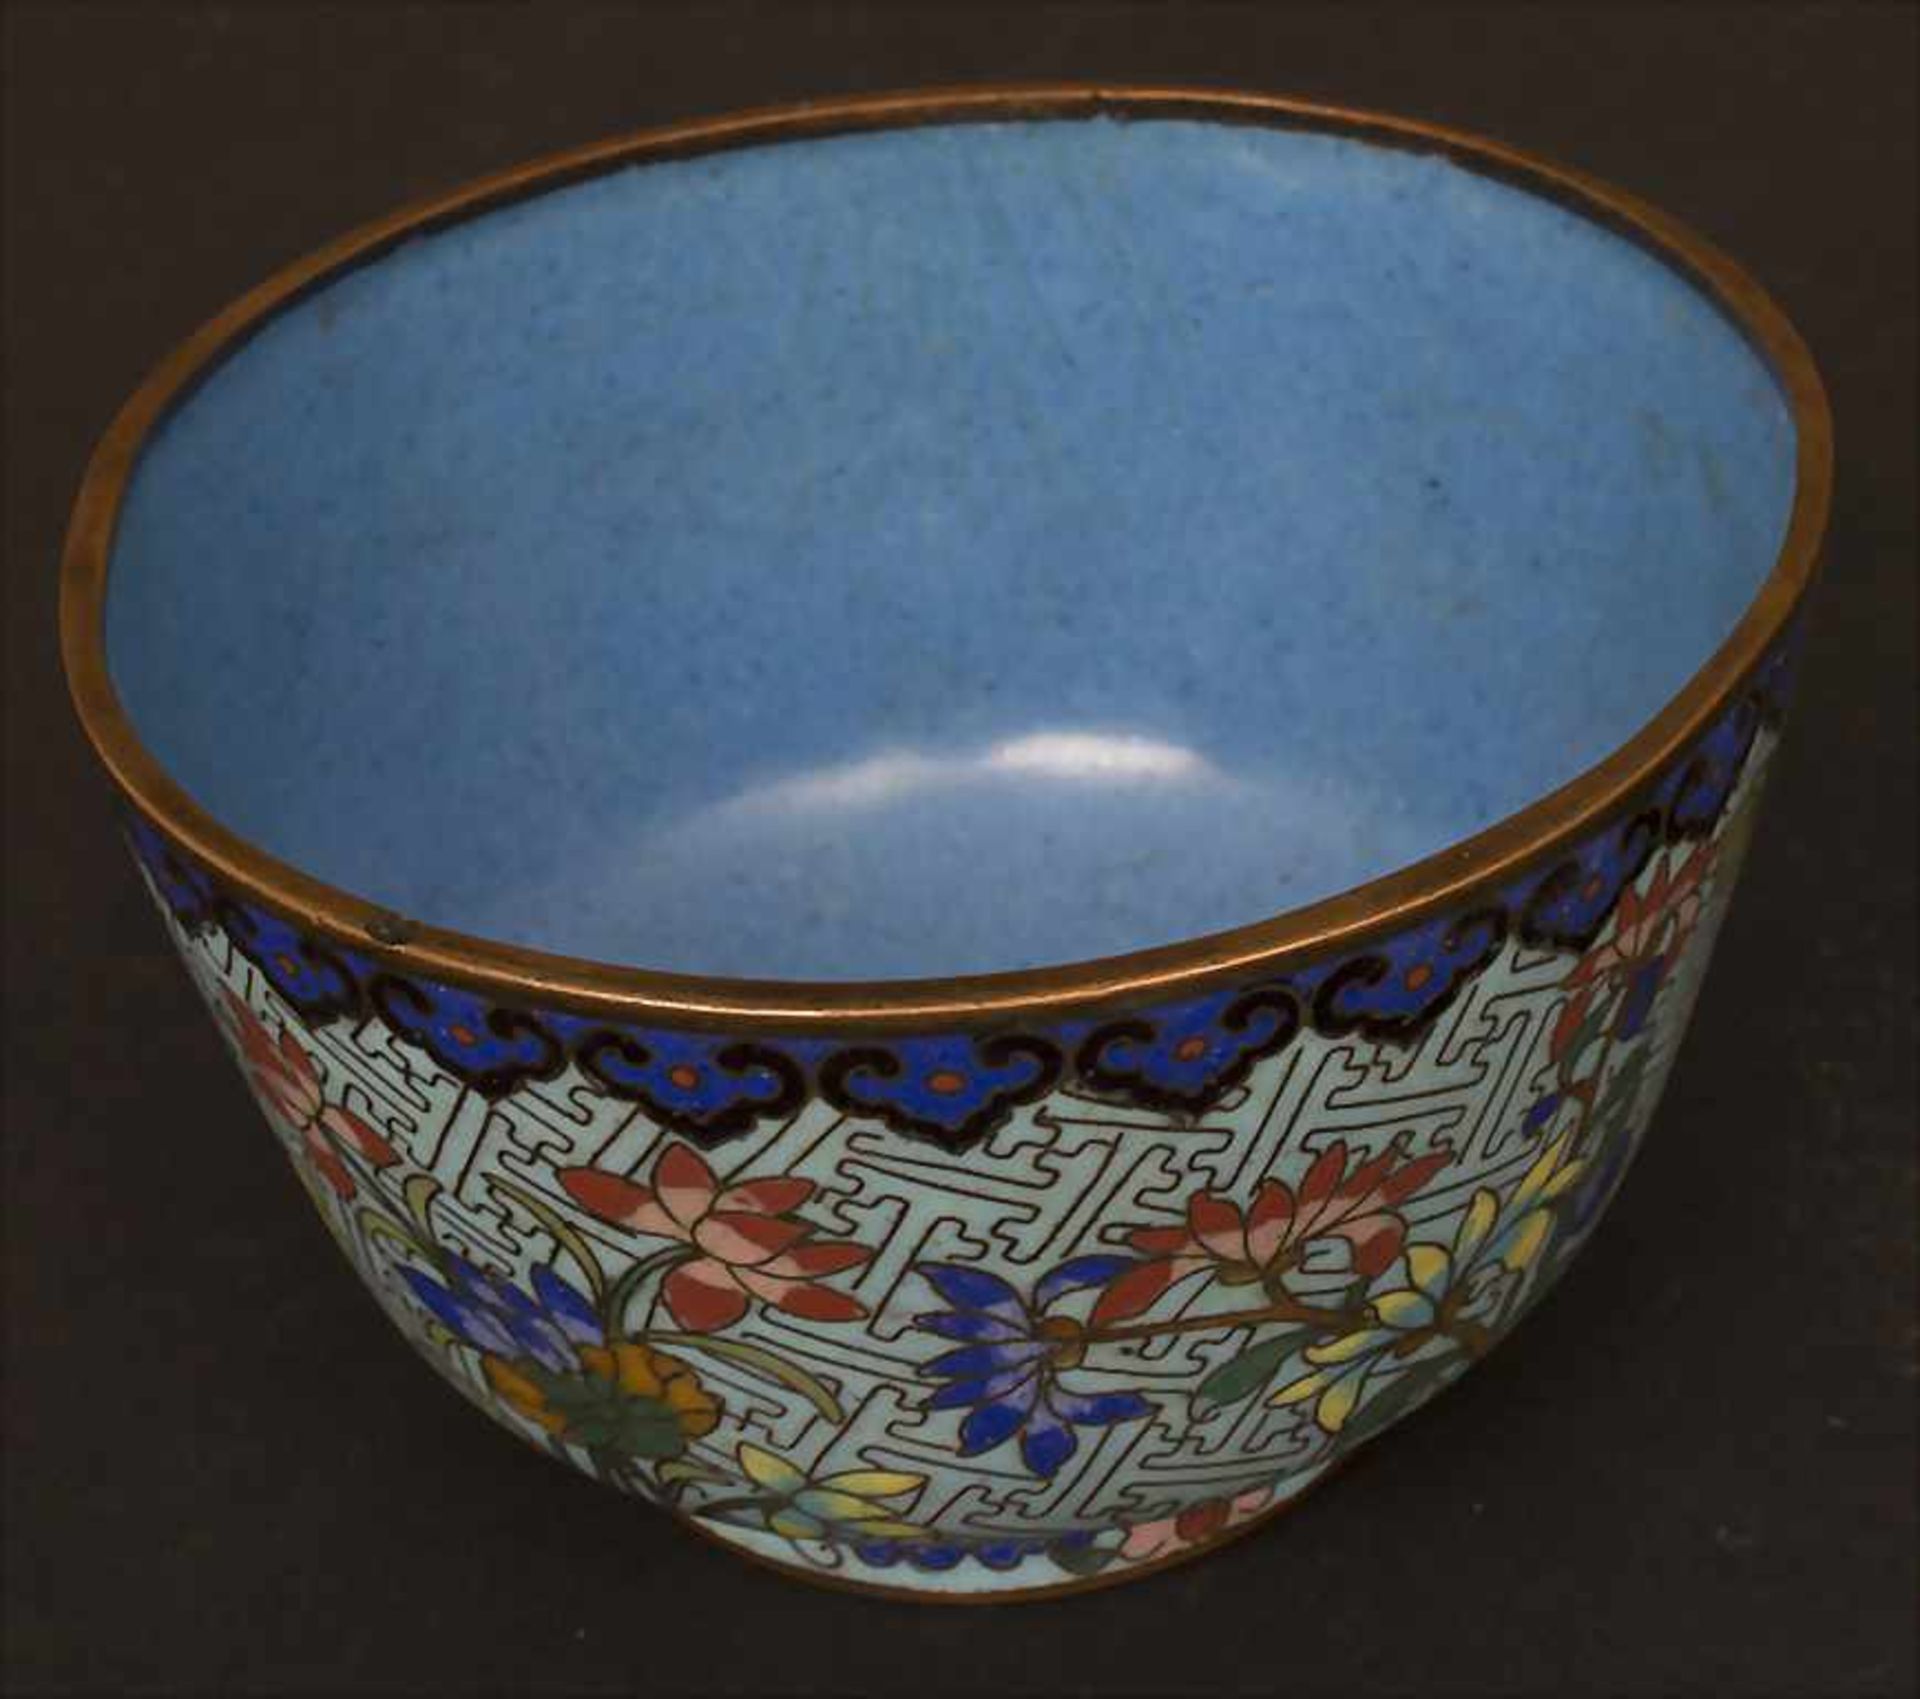 Cloisonné-Kumme 'Blütensträucher' / A Cloisonné bowl 'flowering shrubs', China, um 1900 - Image 5 of 6